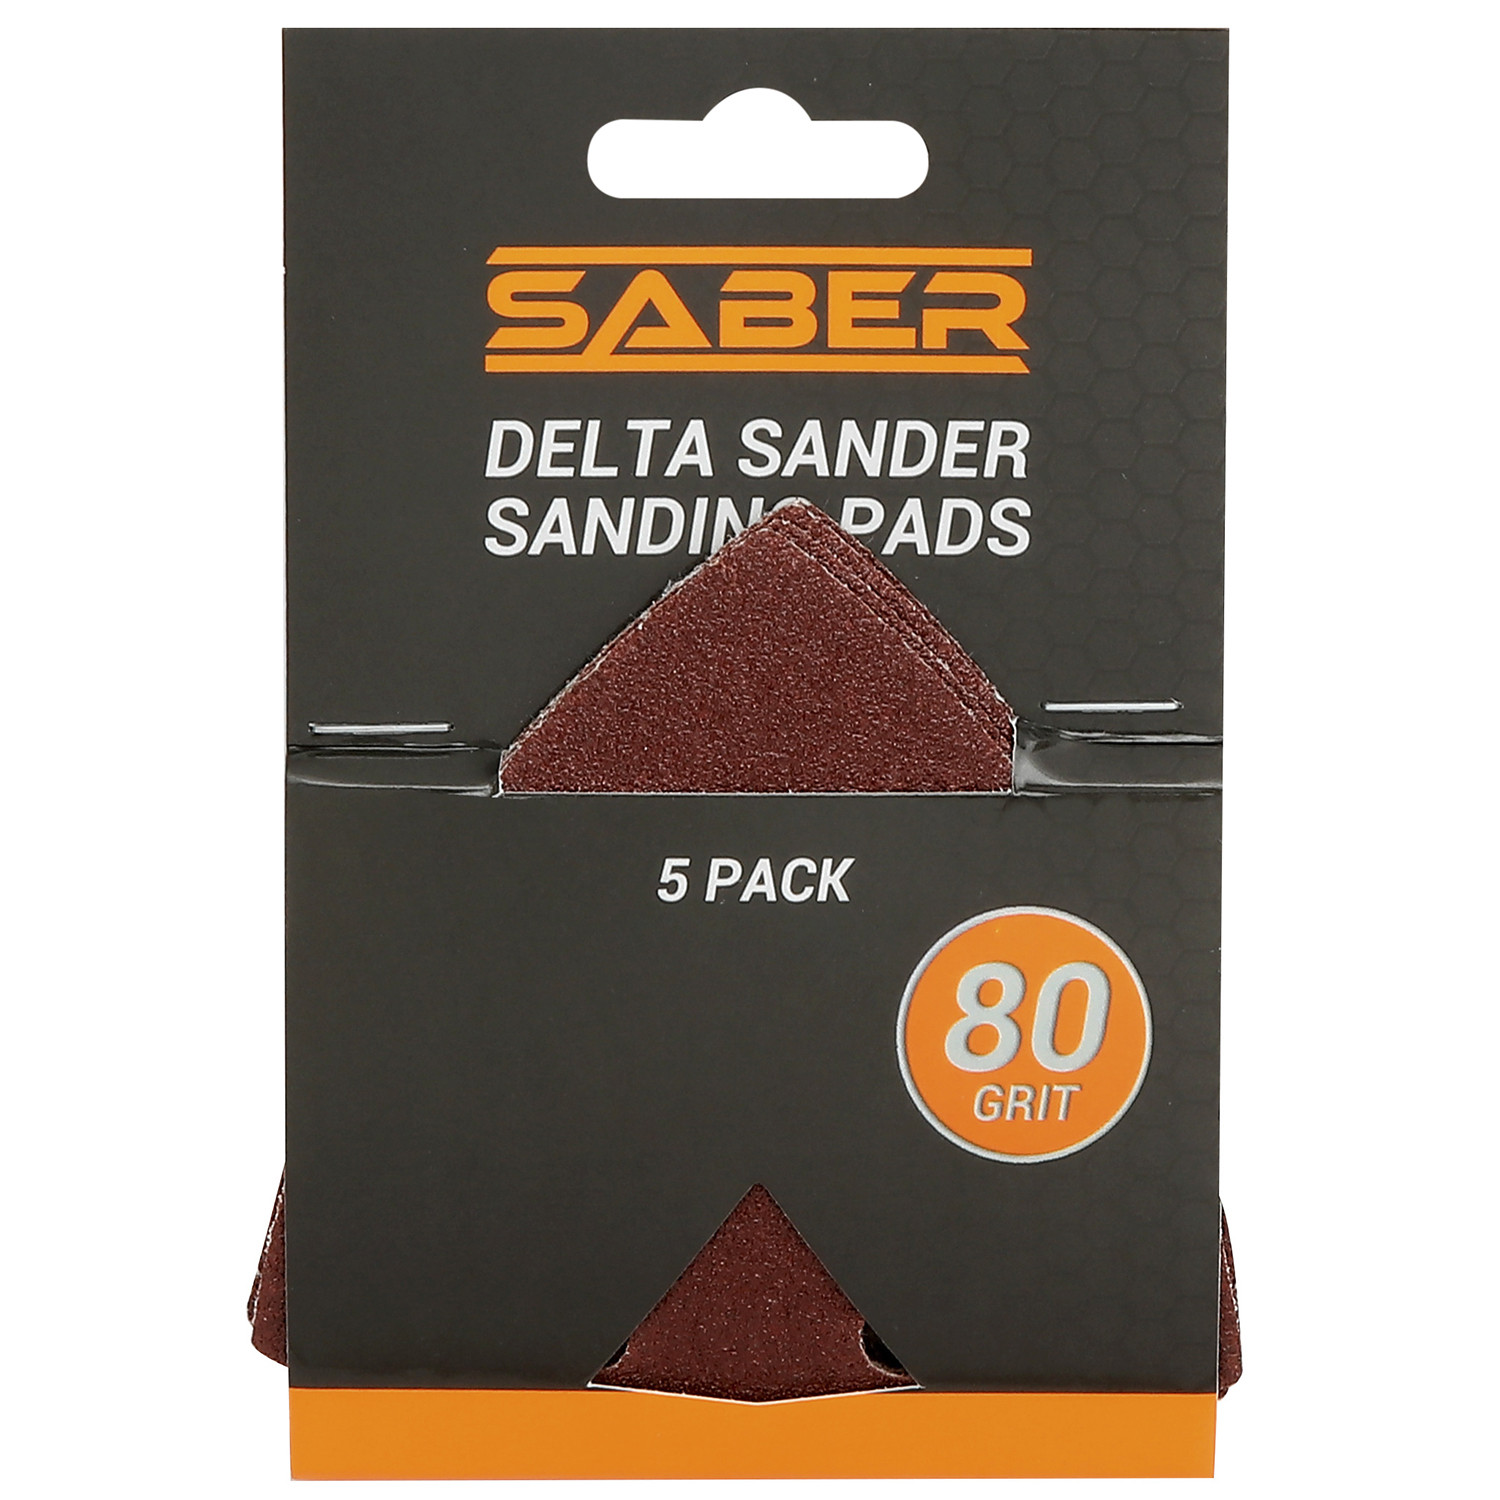 Saber Delta Sander Sanding Pads 5 Pack Image